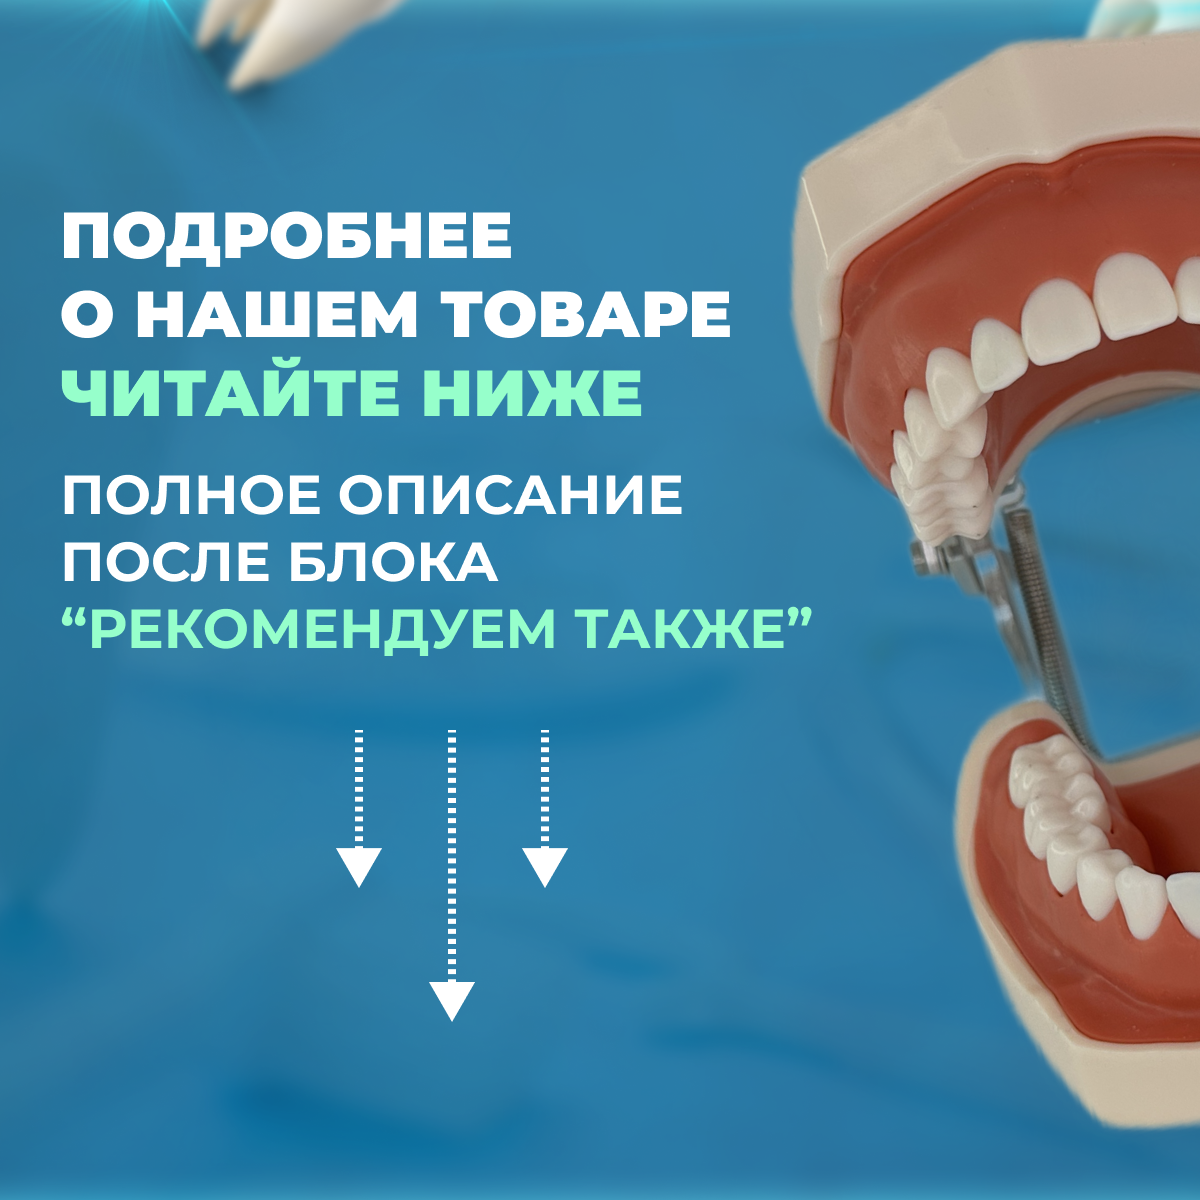 Фантом челюсти (стоматологический фантом)